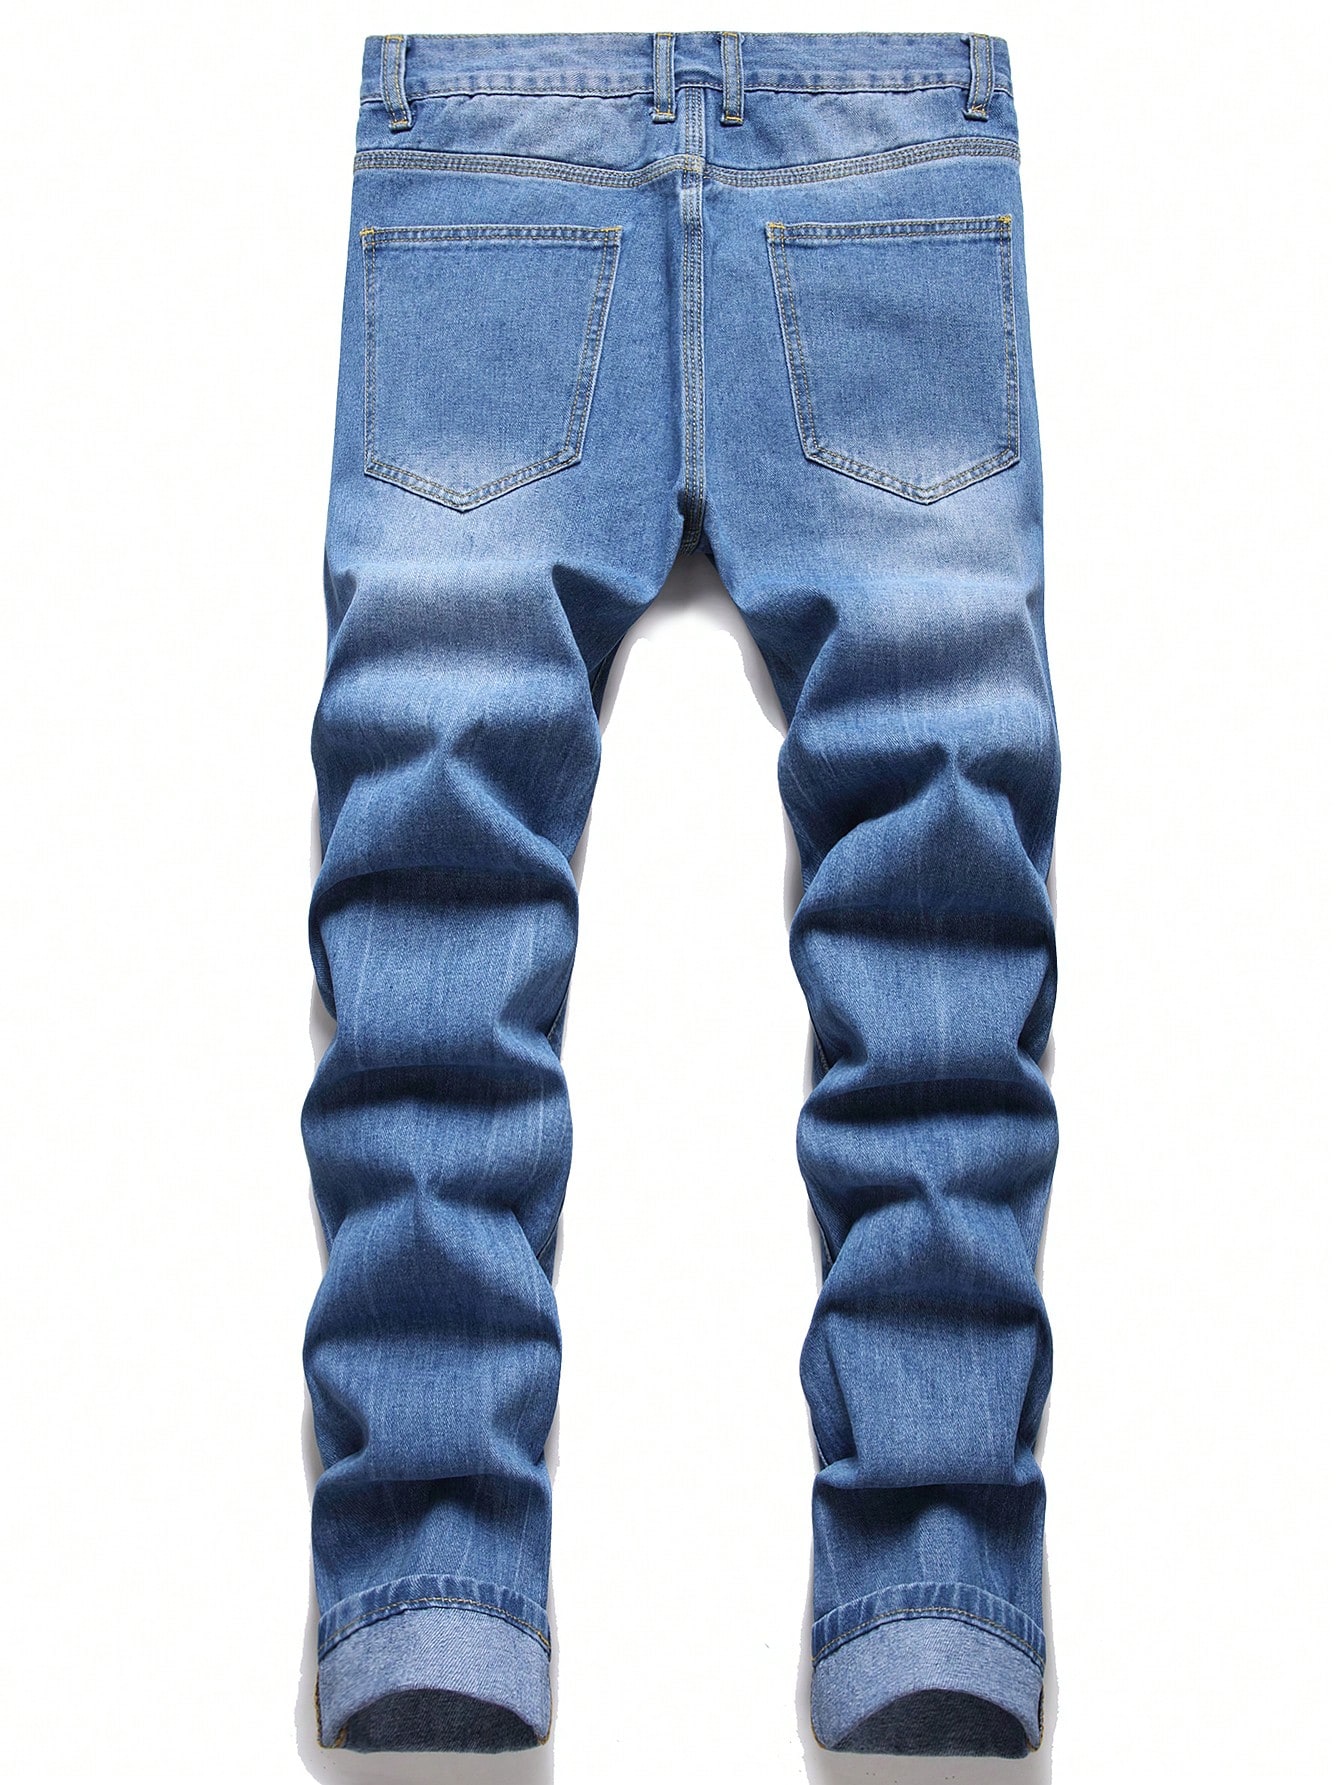 Мужские рваные джинсы на плюшевой подкладке с аппликацией в виде плюшевого мишки, легкая стирка джинсы женские джинсовые